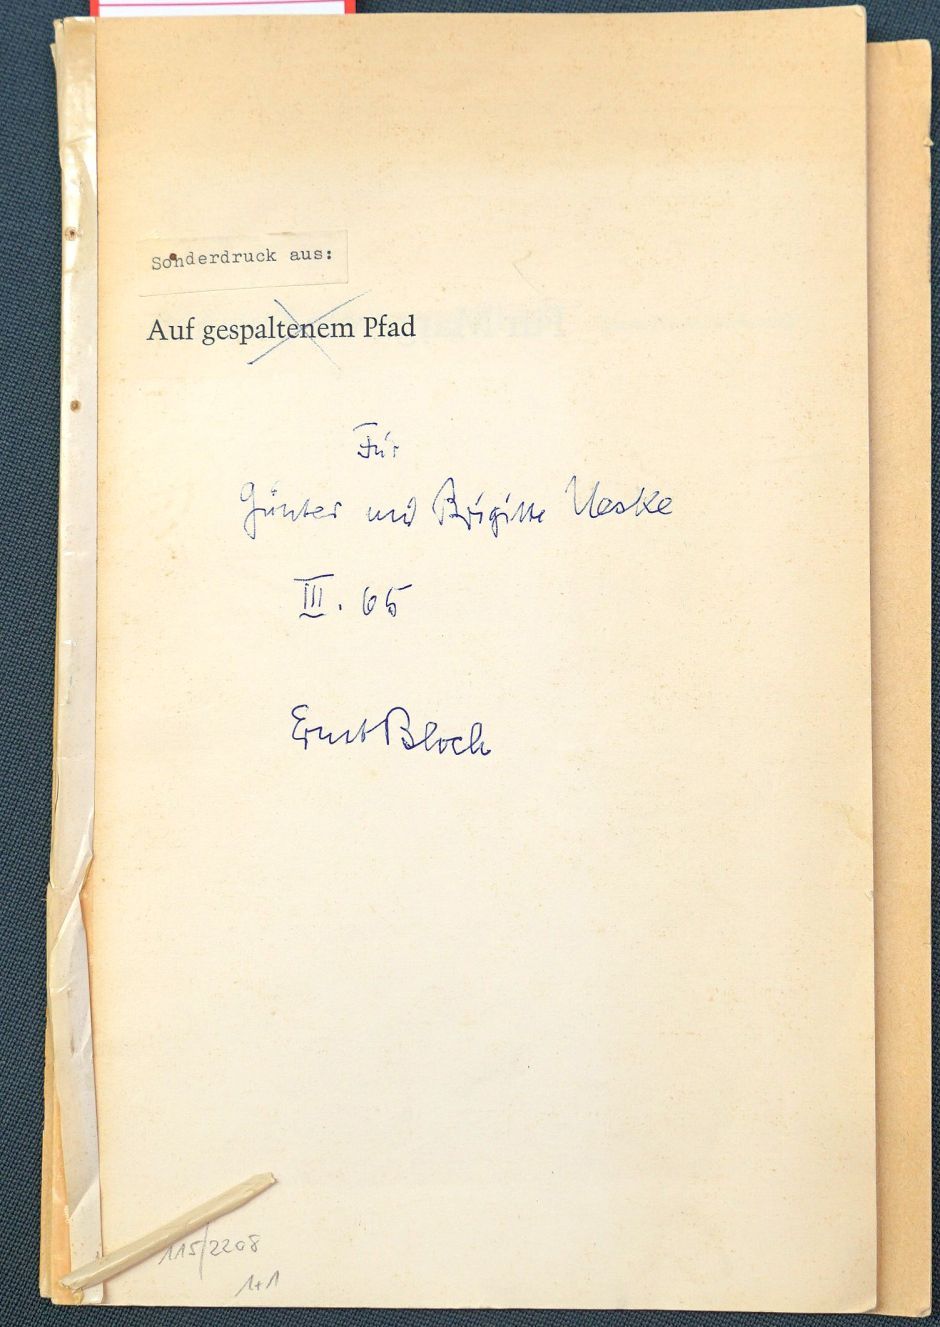 Lot 2208, Auction  115, Bloch, Ernst, Zwei Sonderdrucke mit eigenhändiger Widmung von Ernst Bloch